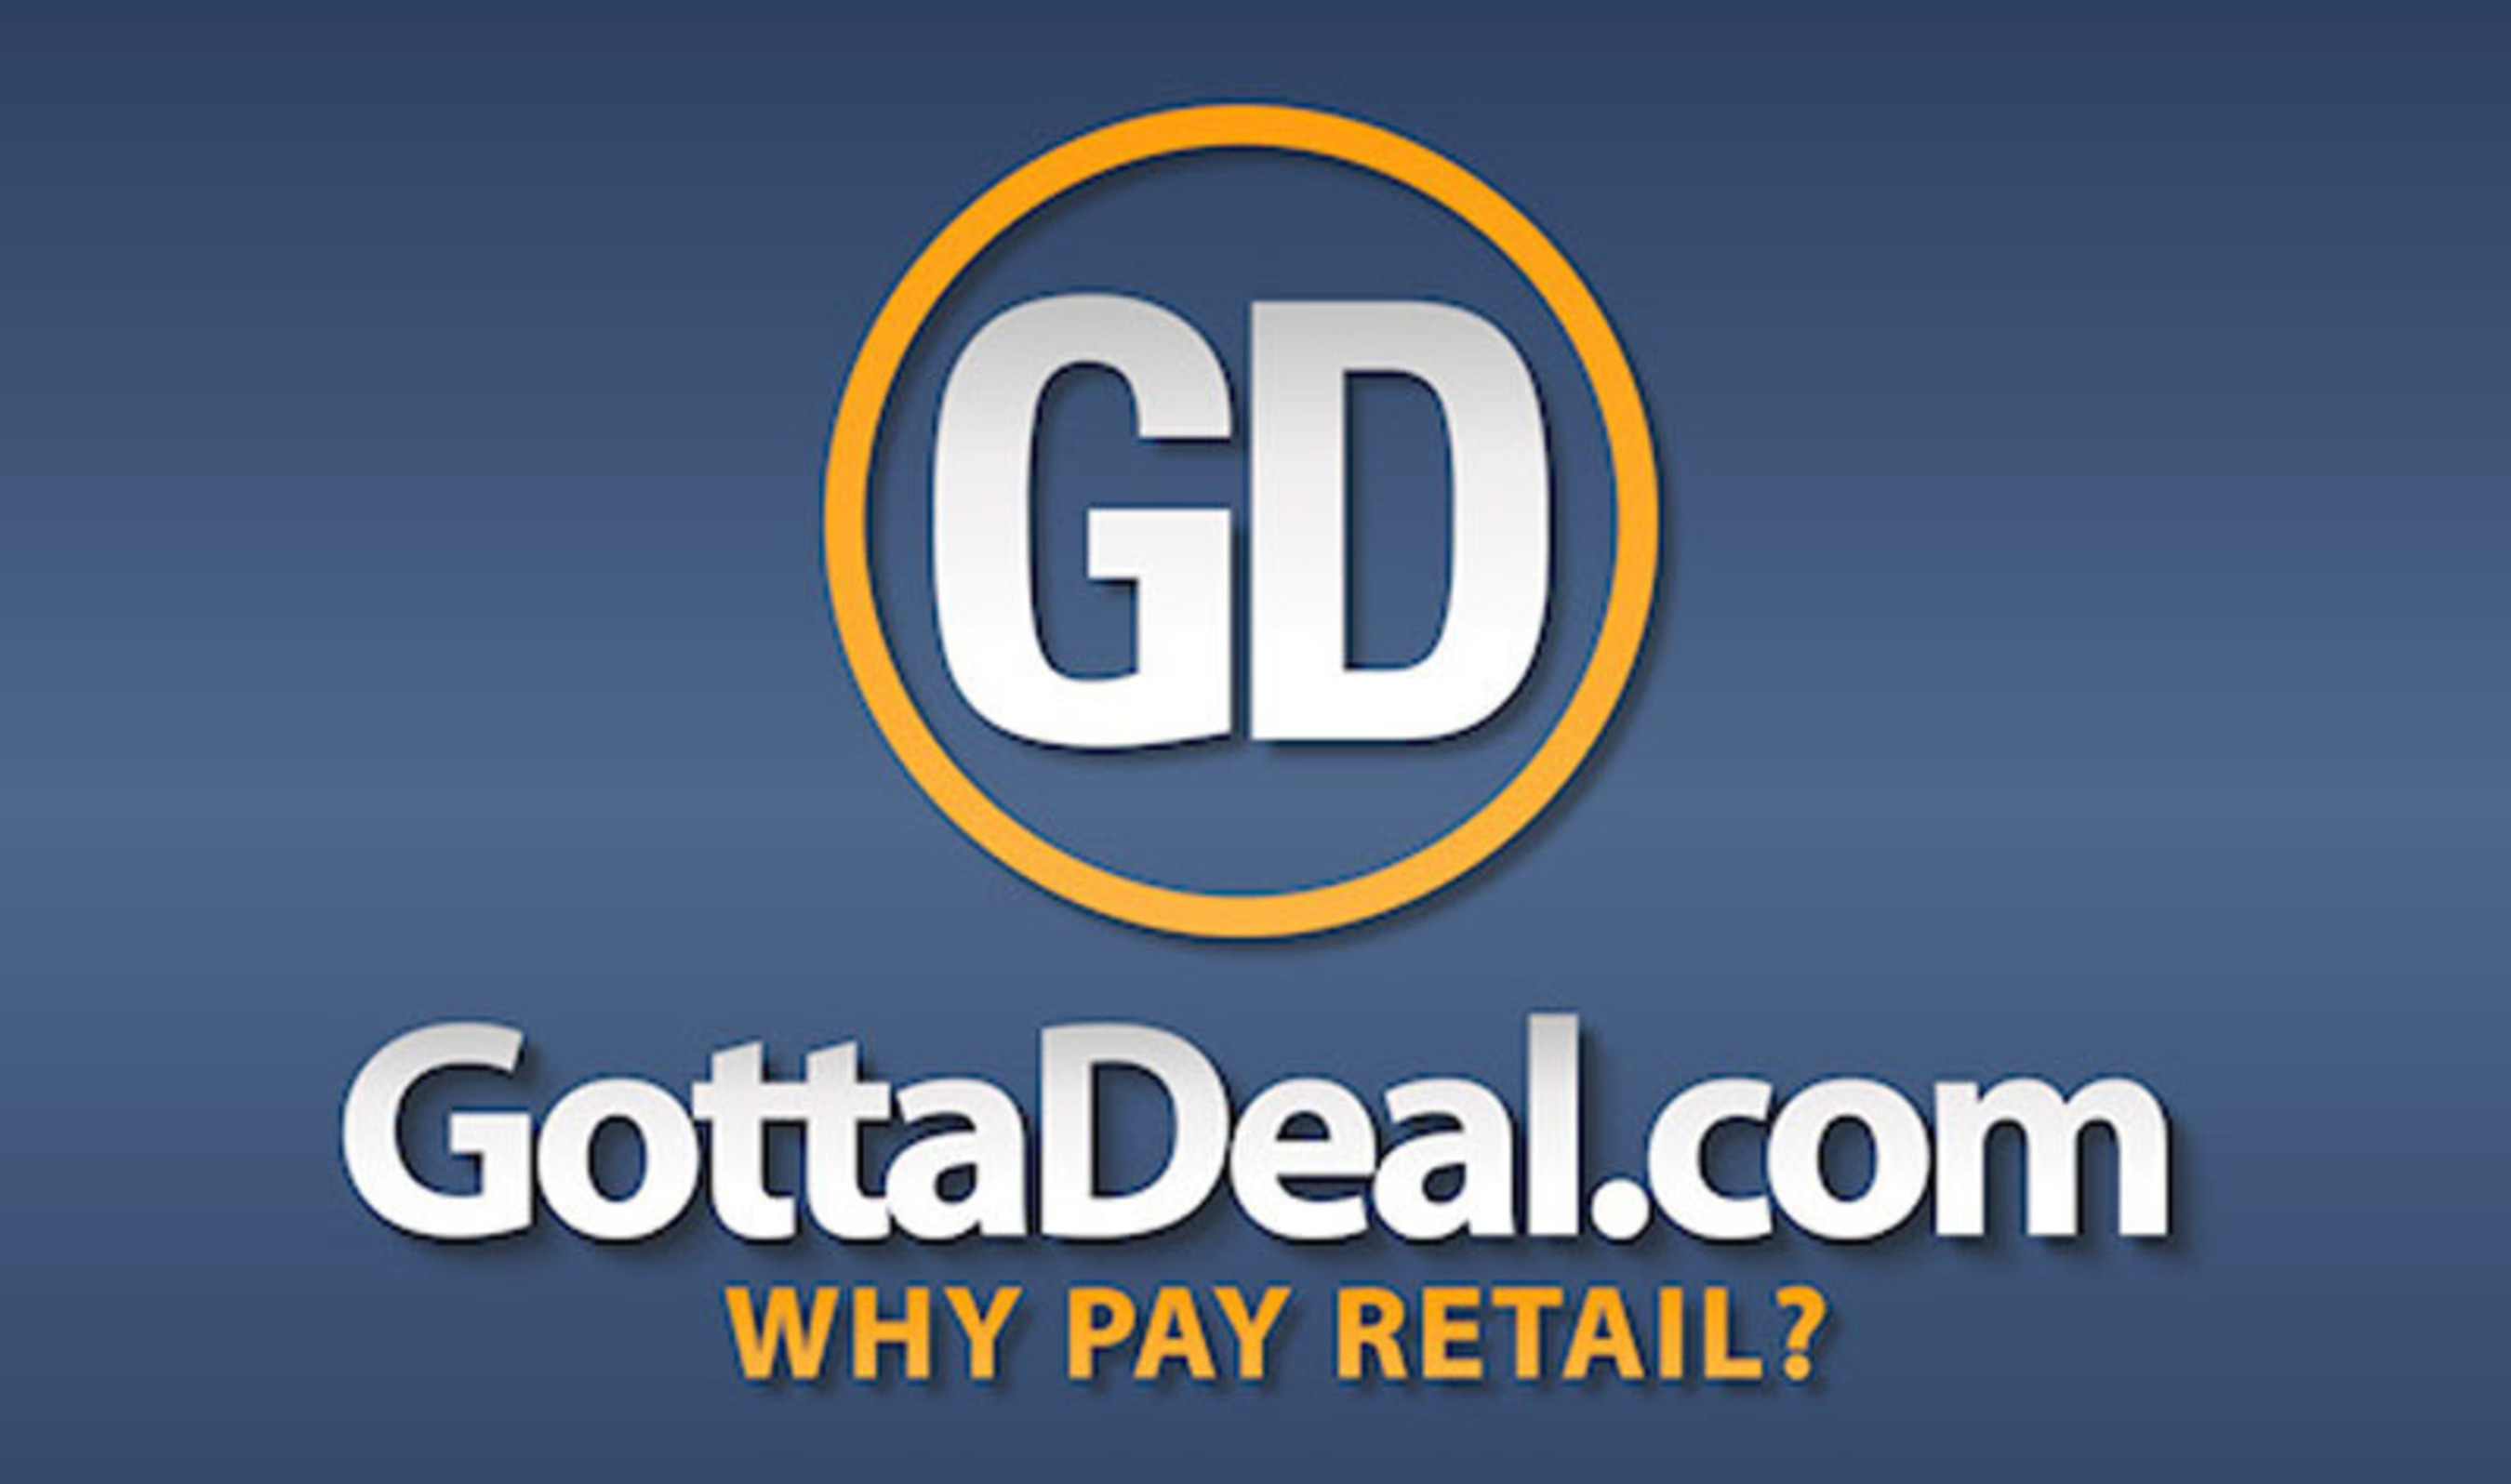 GottaDeal.com logo. (PRNewsFoto/GottaDeal.com) (PRNewsFoto/GOTTADEAL.COM)